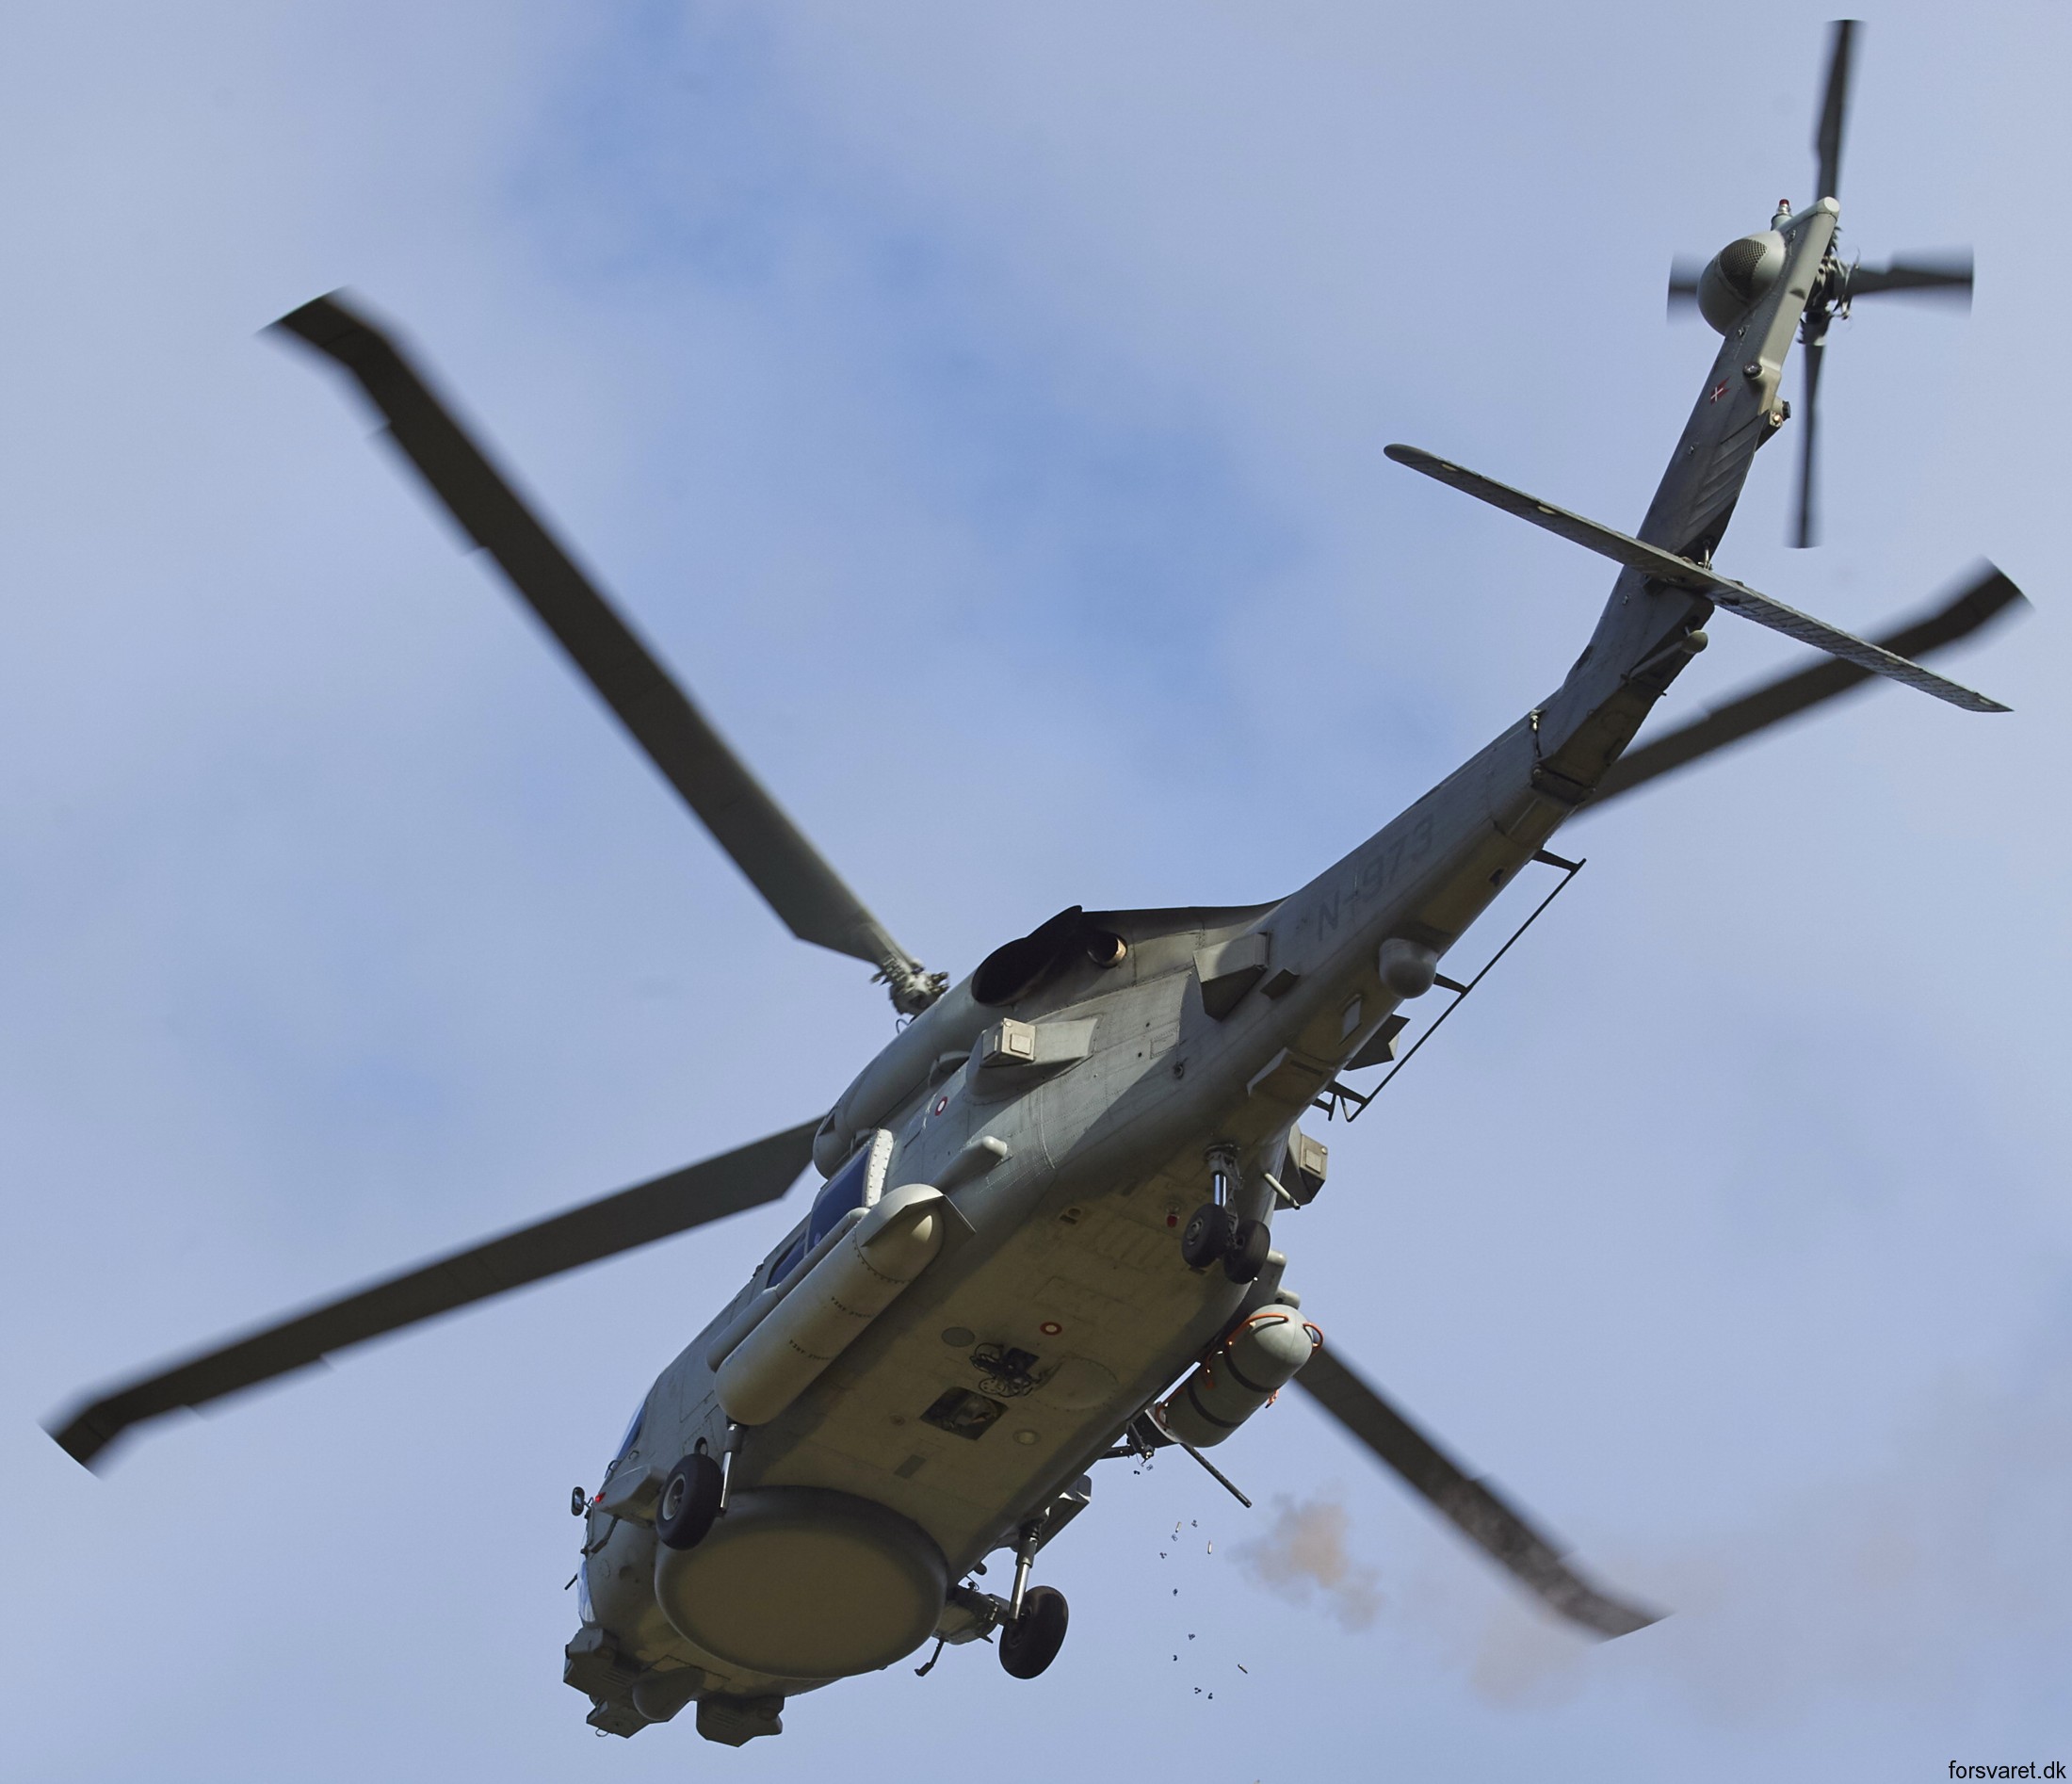 mh-60r seahawk royal danish navy air force flyvevåbnet kongelige danske marine sikorsky helicopter 723 eskadrille squadron karup 29